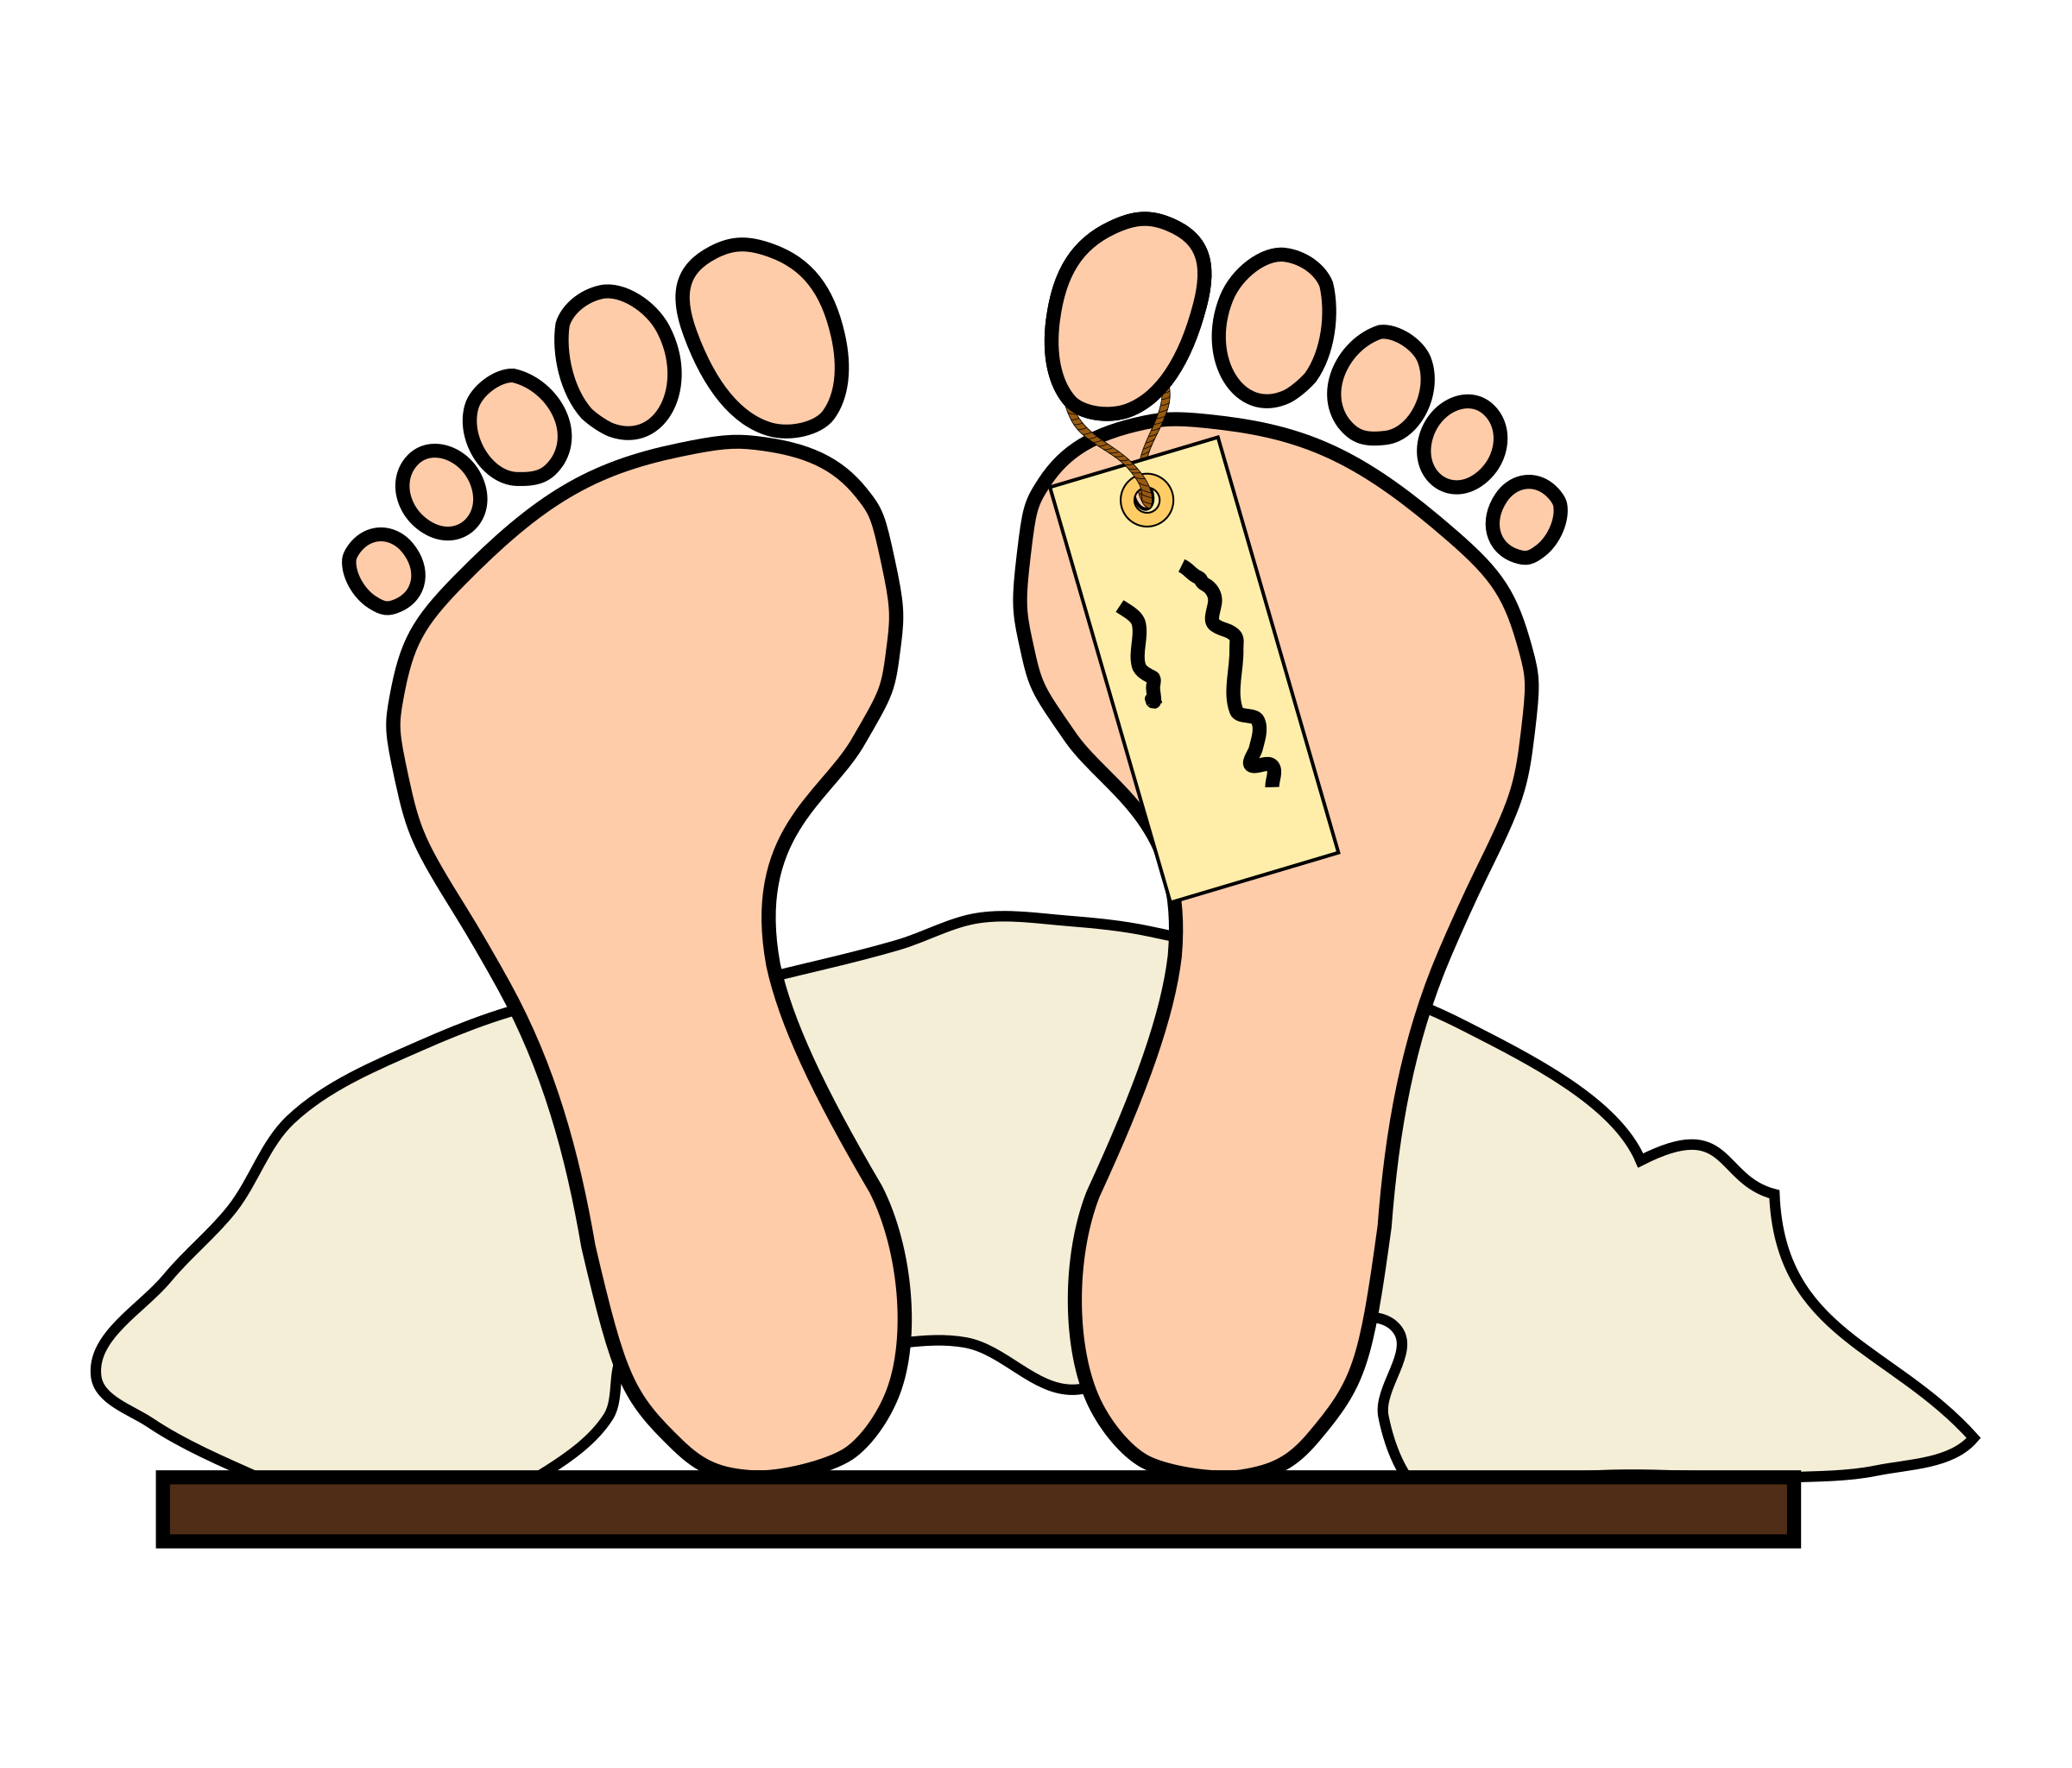 feet clipart body part